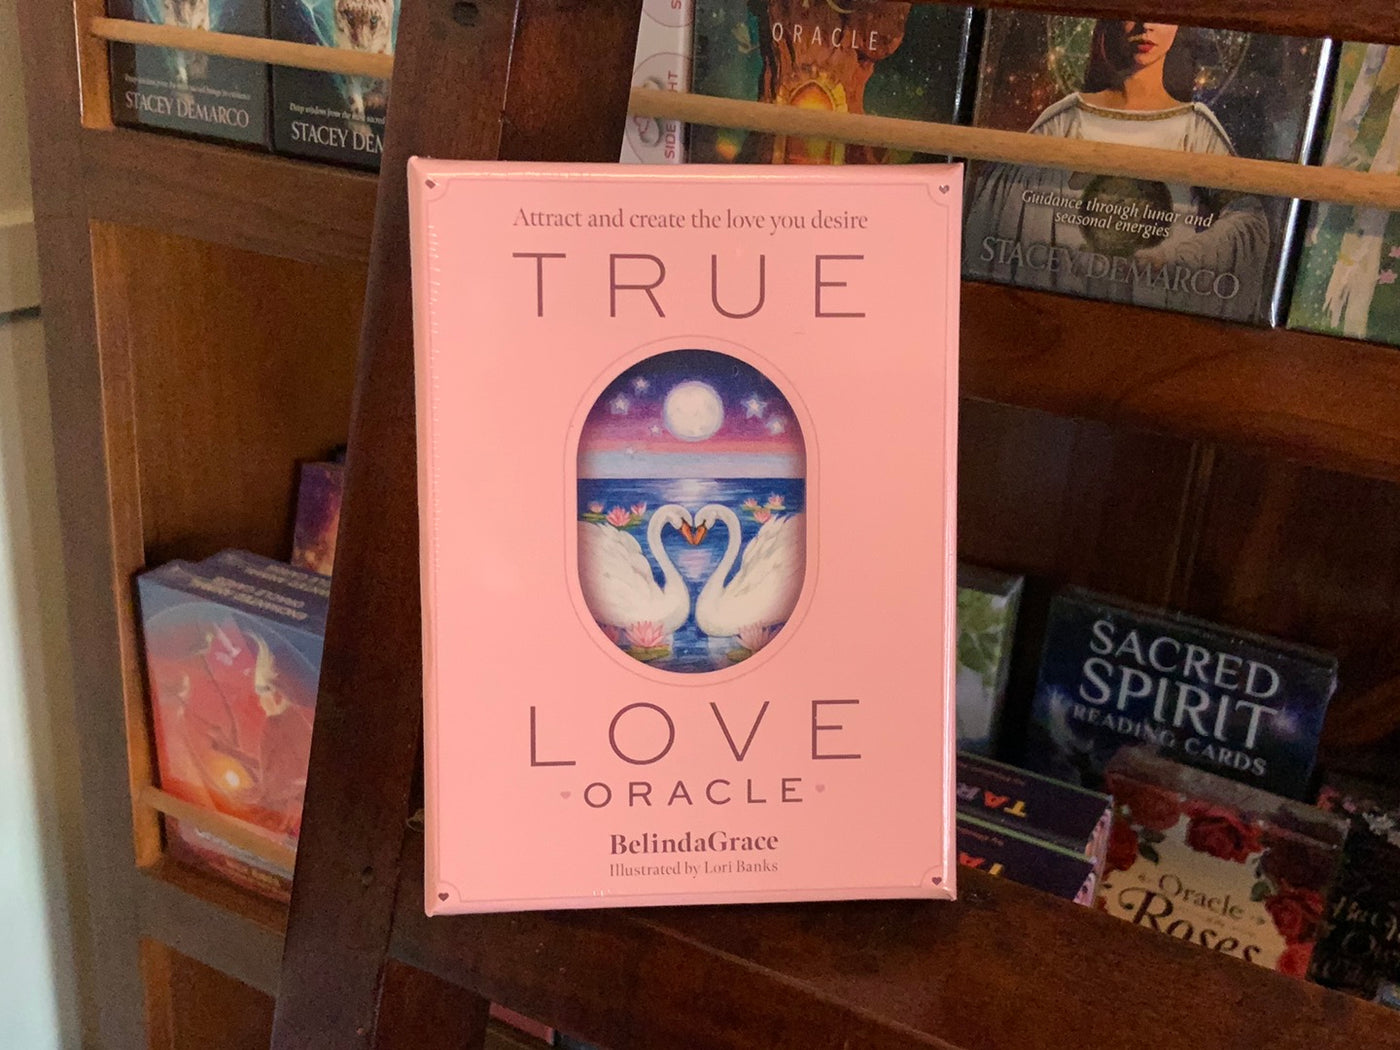 True Love Oracle